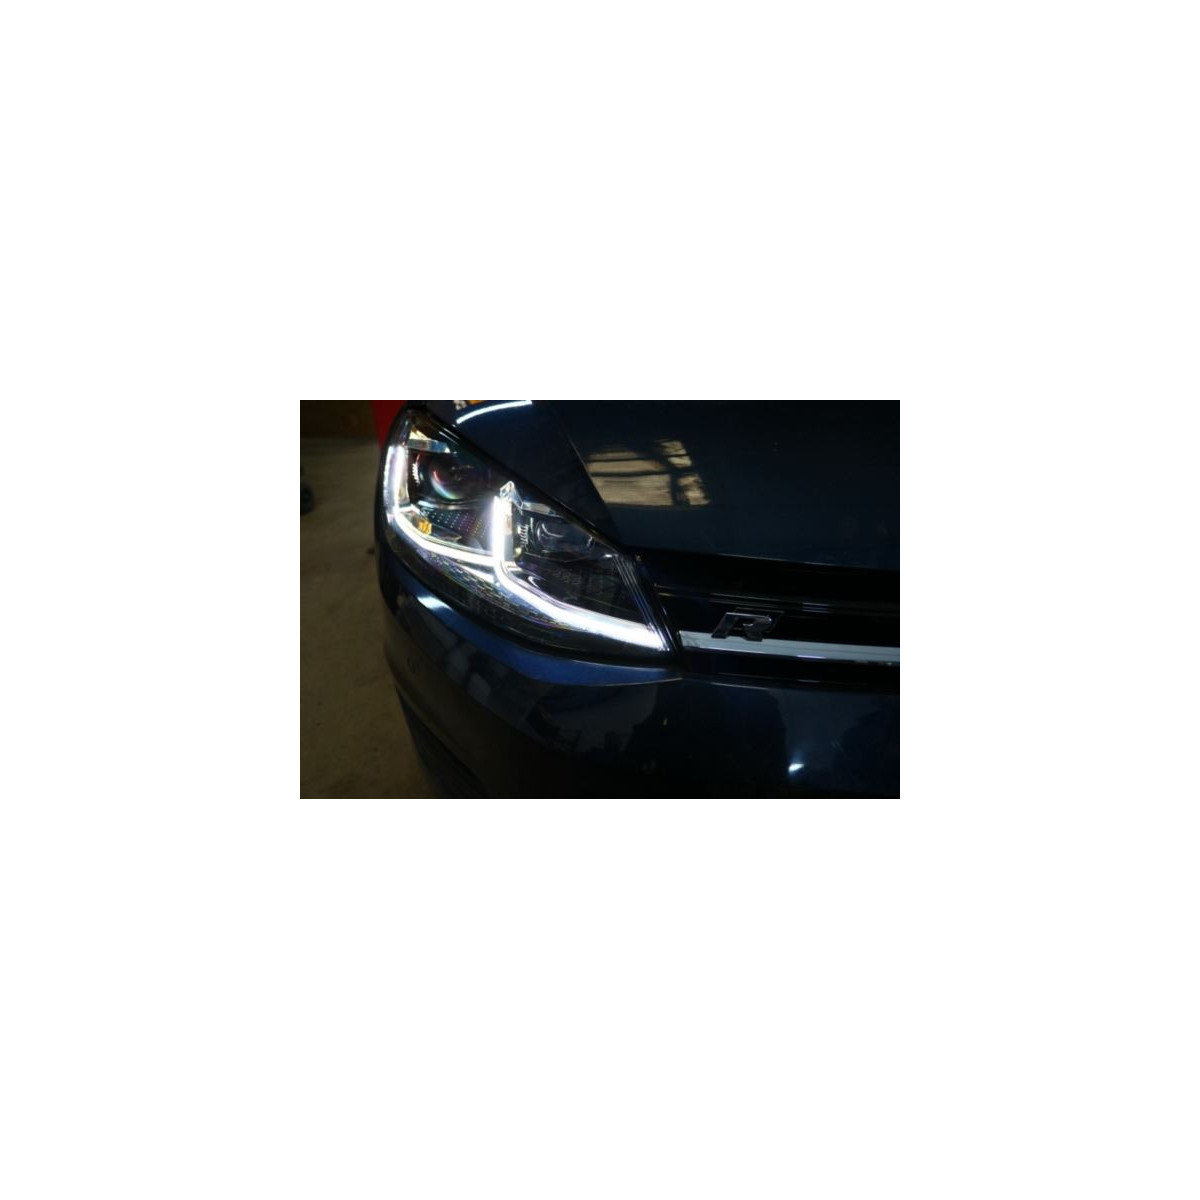 LAMPY PRZEDNIE VW GOLF 7 (2012-2017) R-LINE SEQ